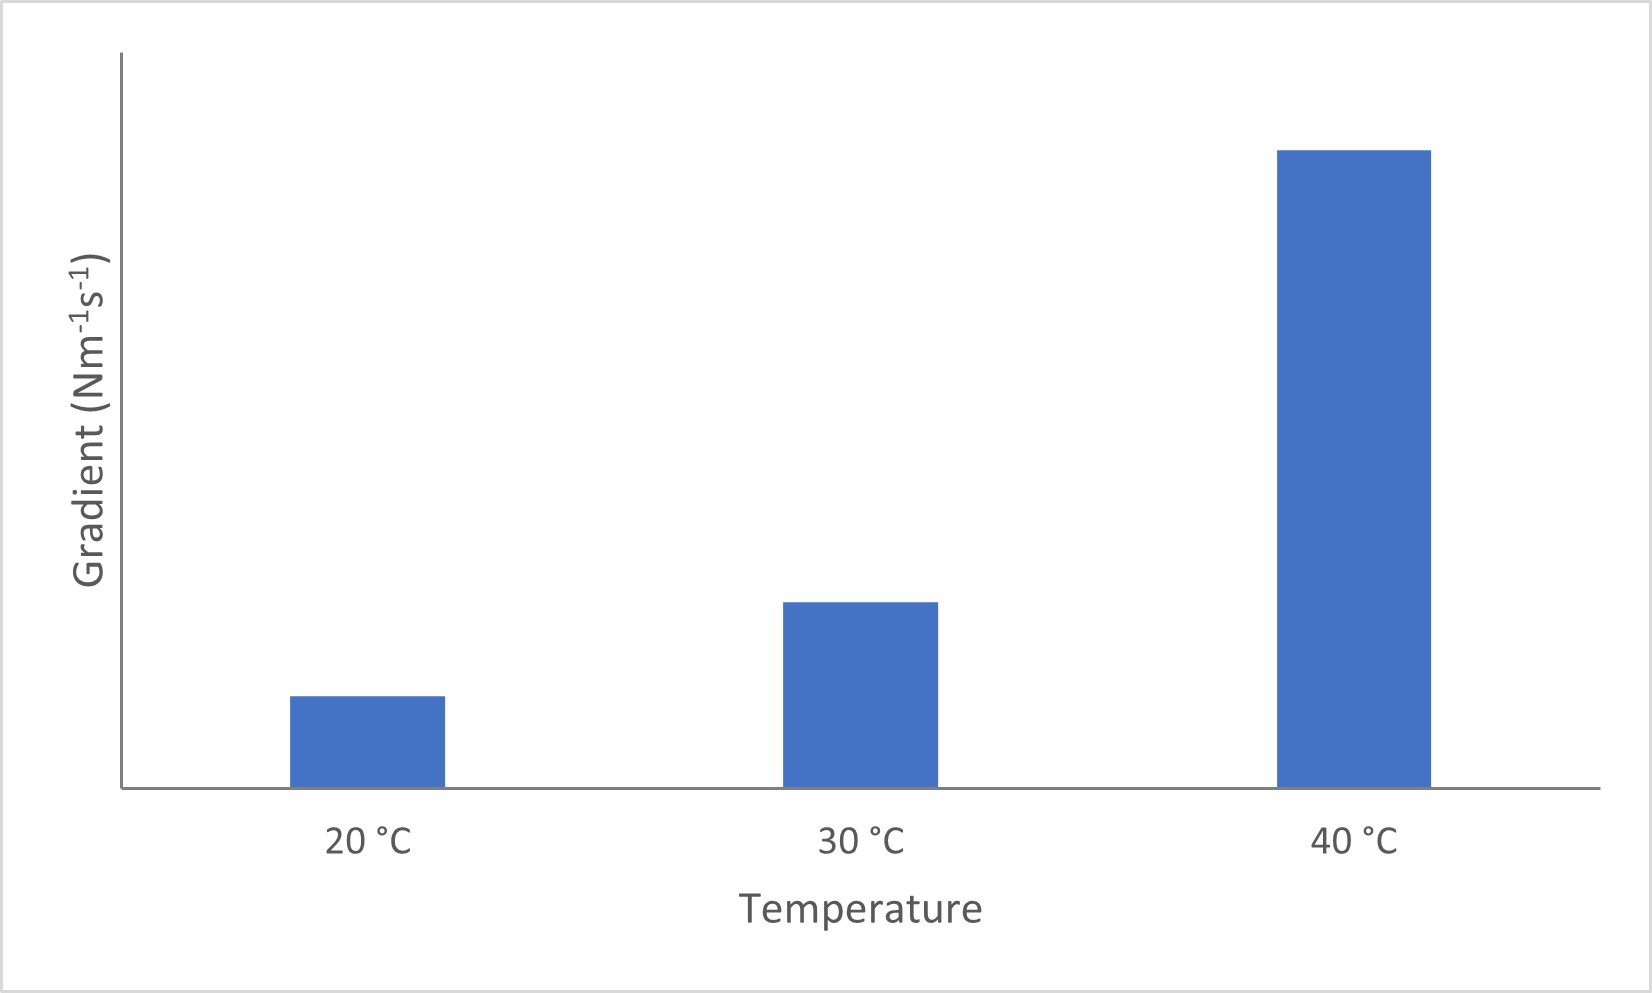 plot of temperature vs gradient